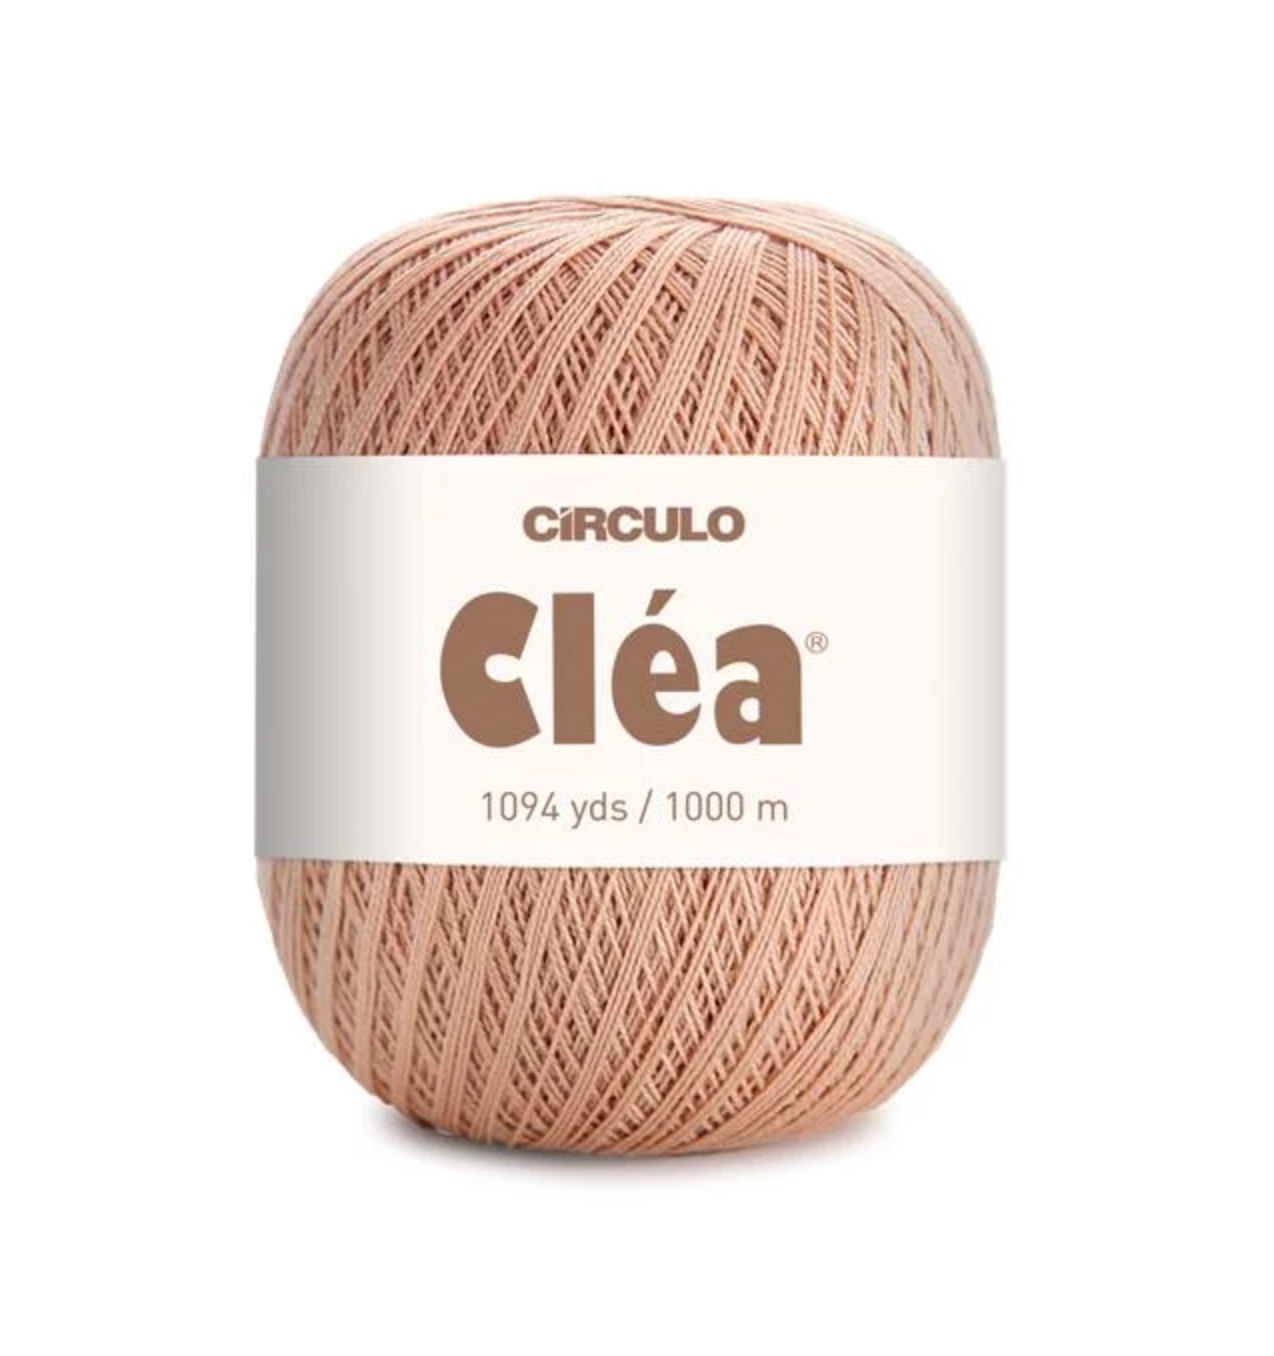 Circulo - Clea